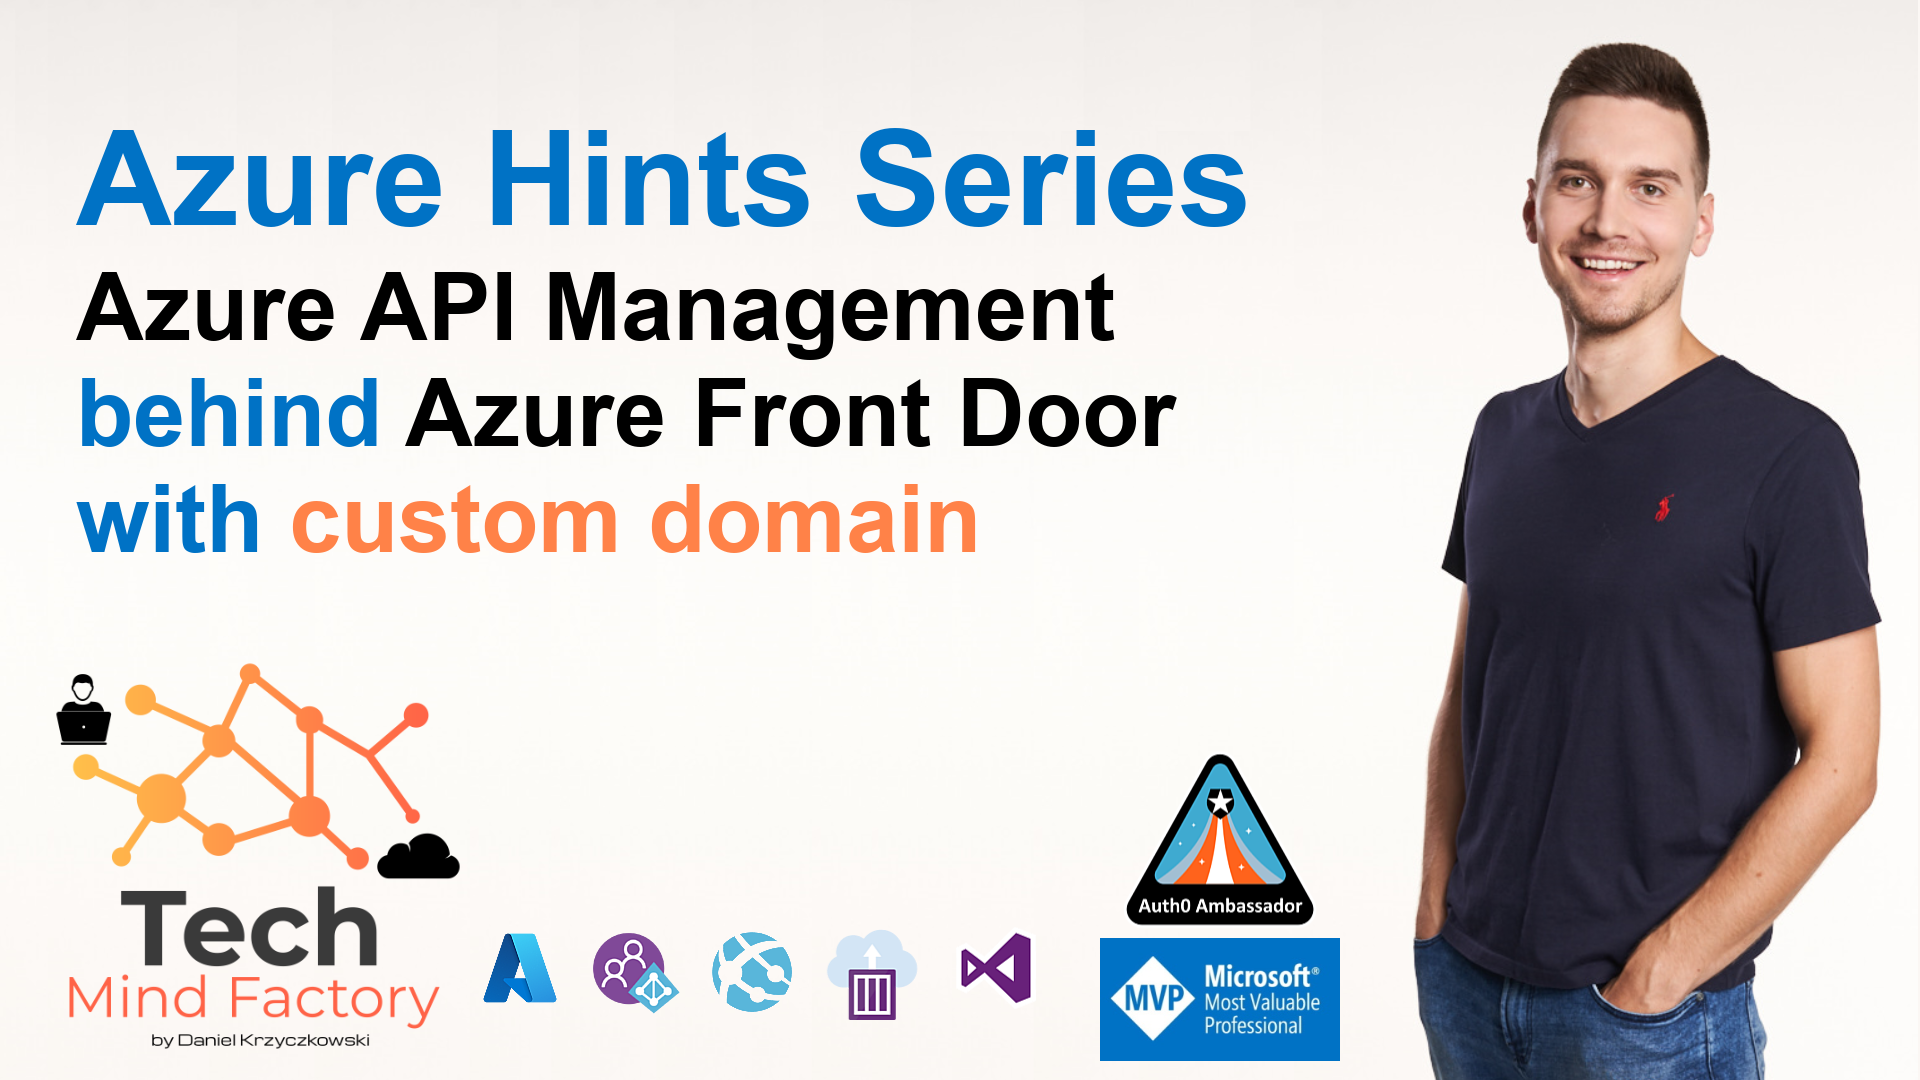 Azure Hints Series - Azure API Management with custom domain behind Azure Front Door